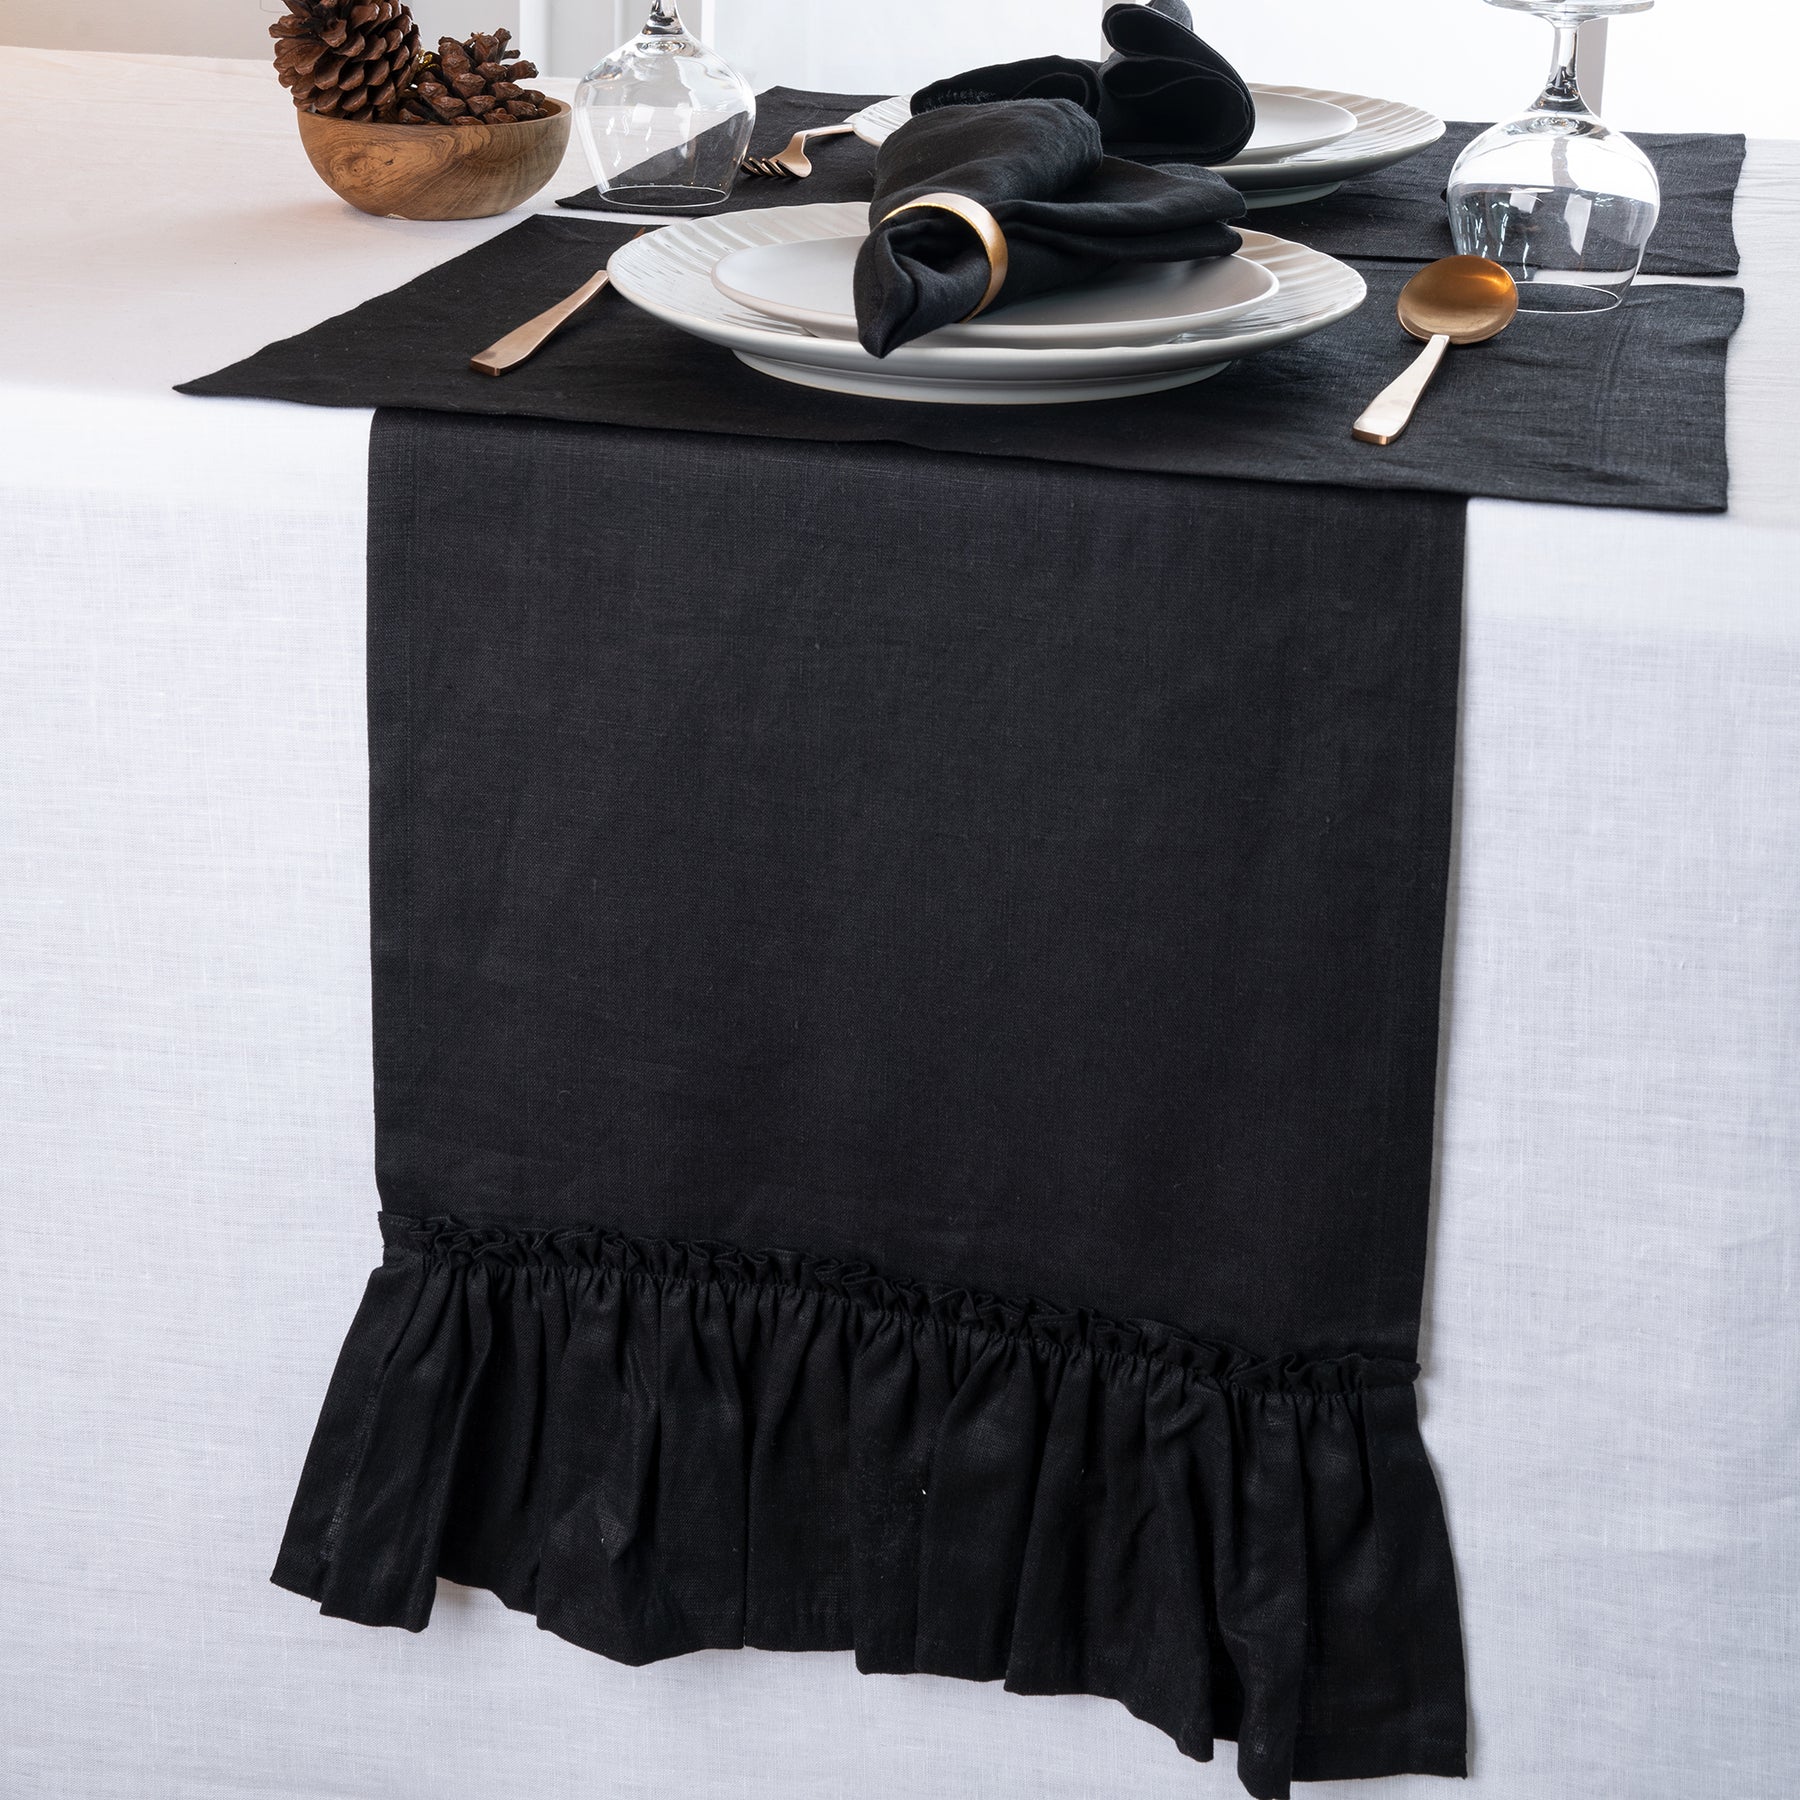 Black Linen Table Runner - Ruffle